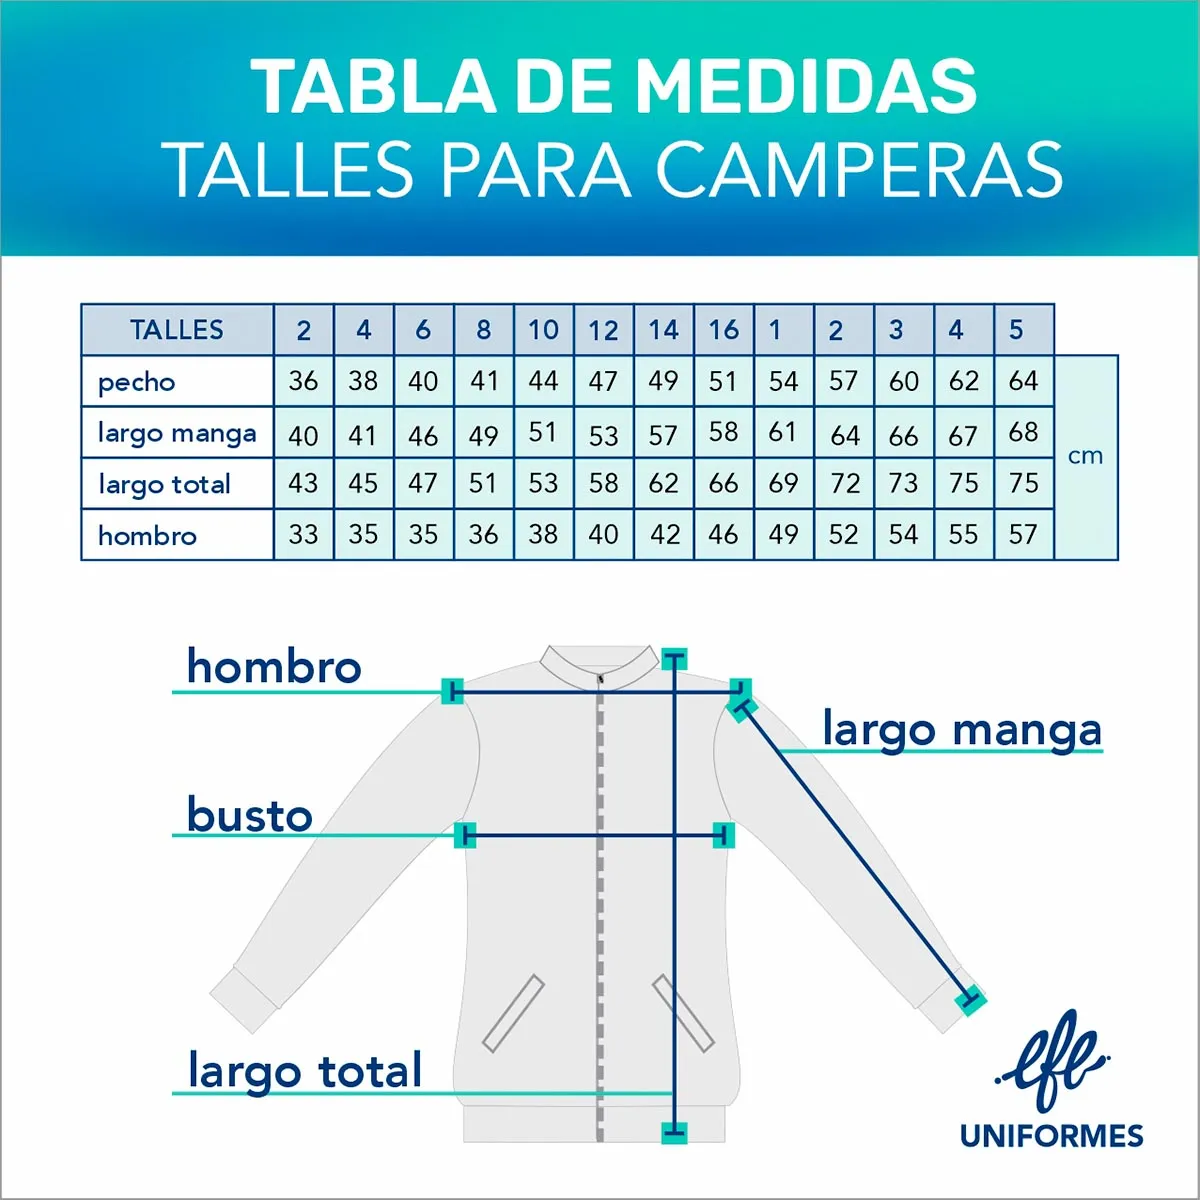 TABLA DE MEDIDAS CAMPERAS